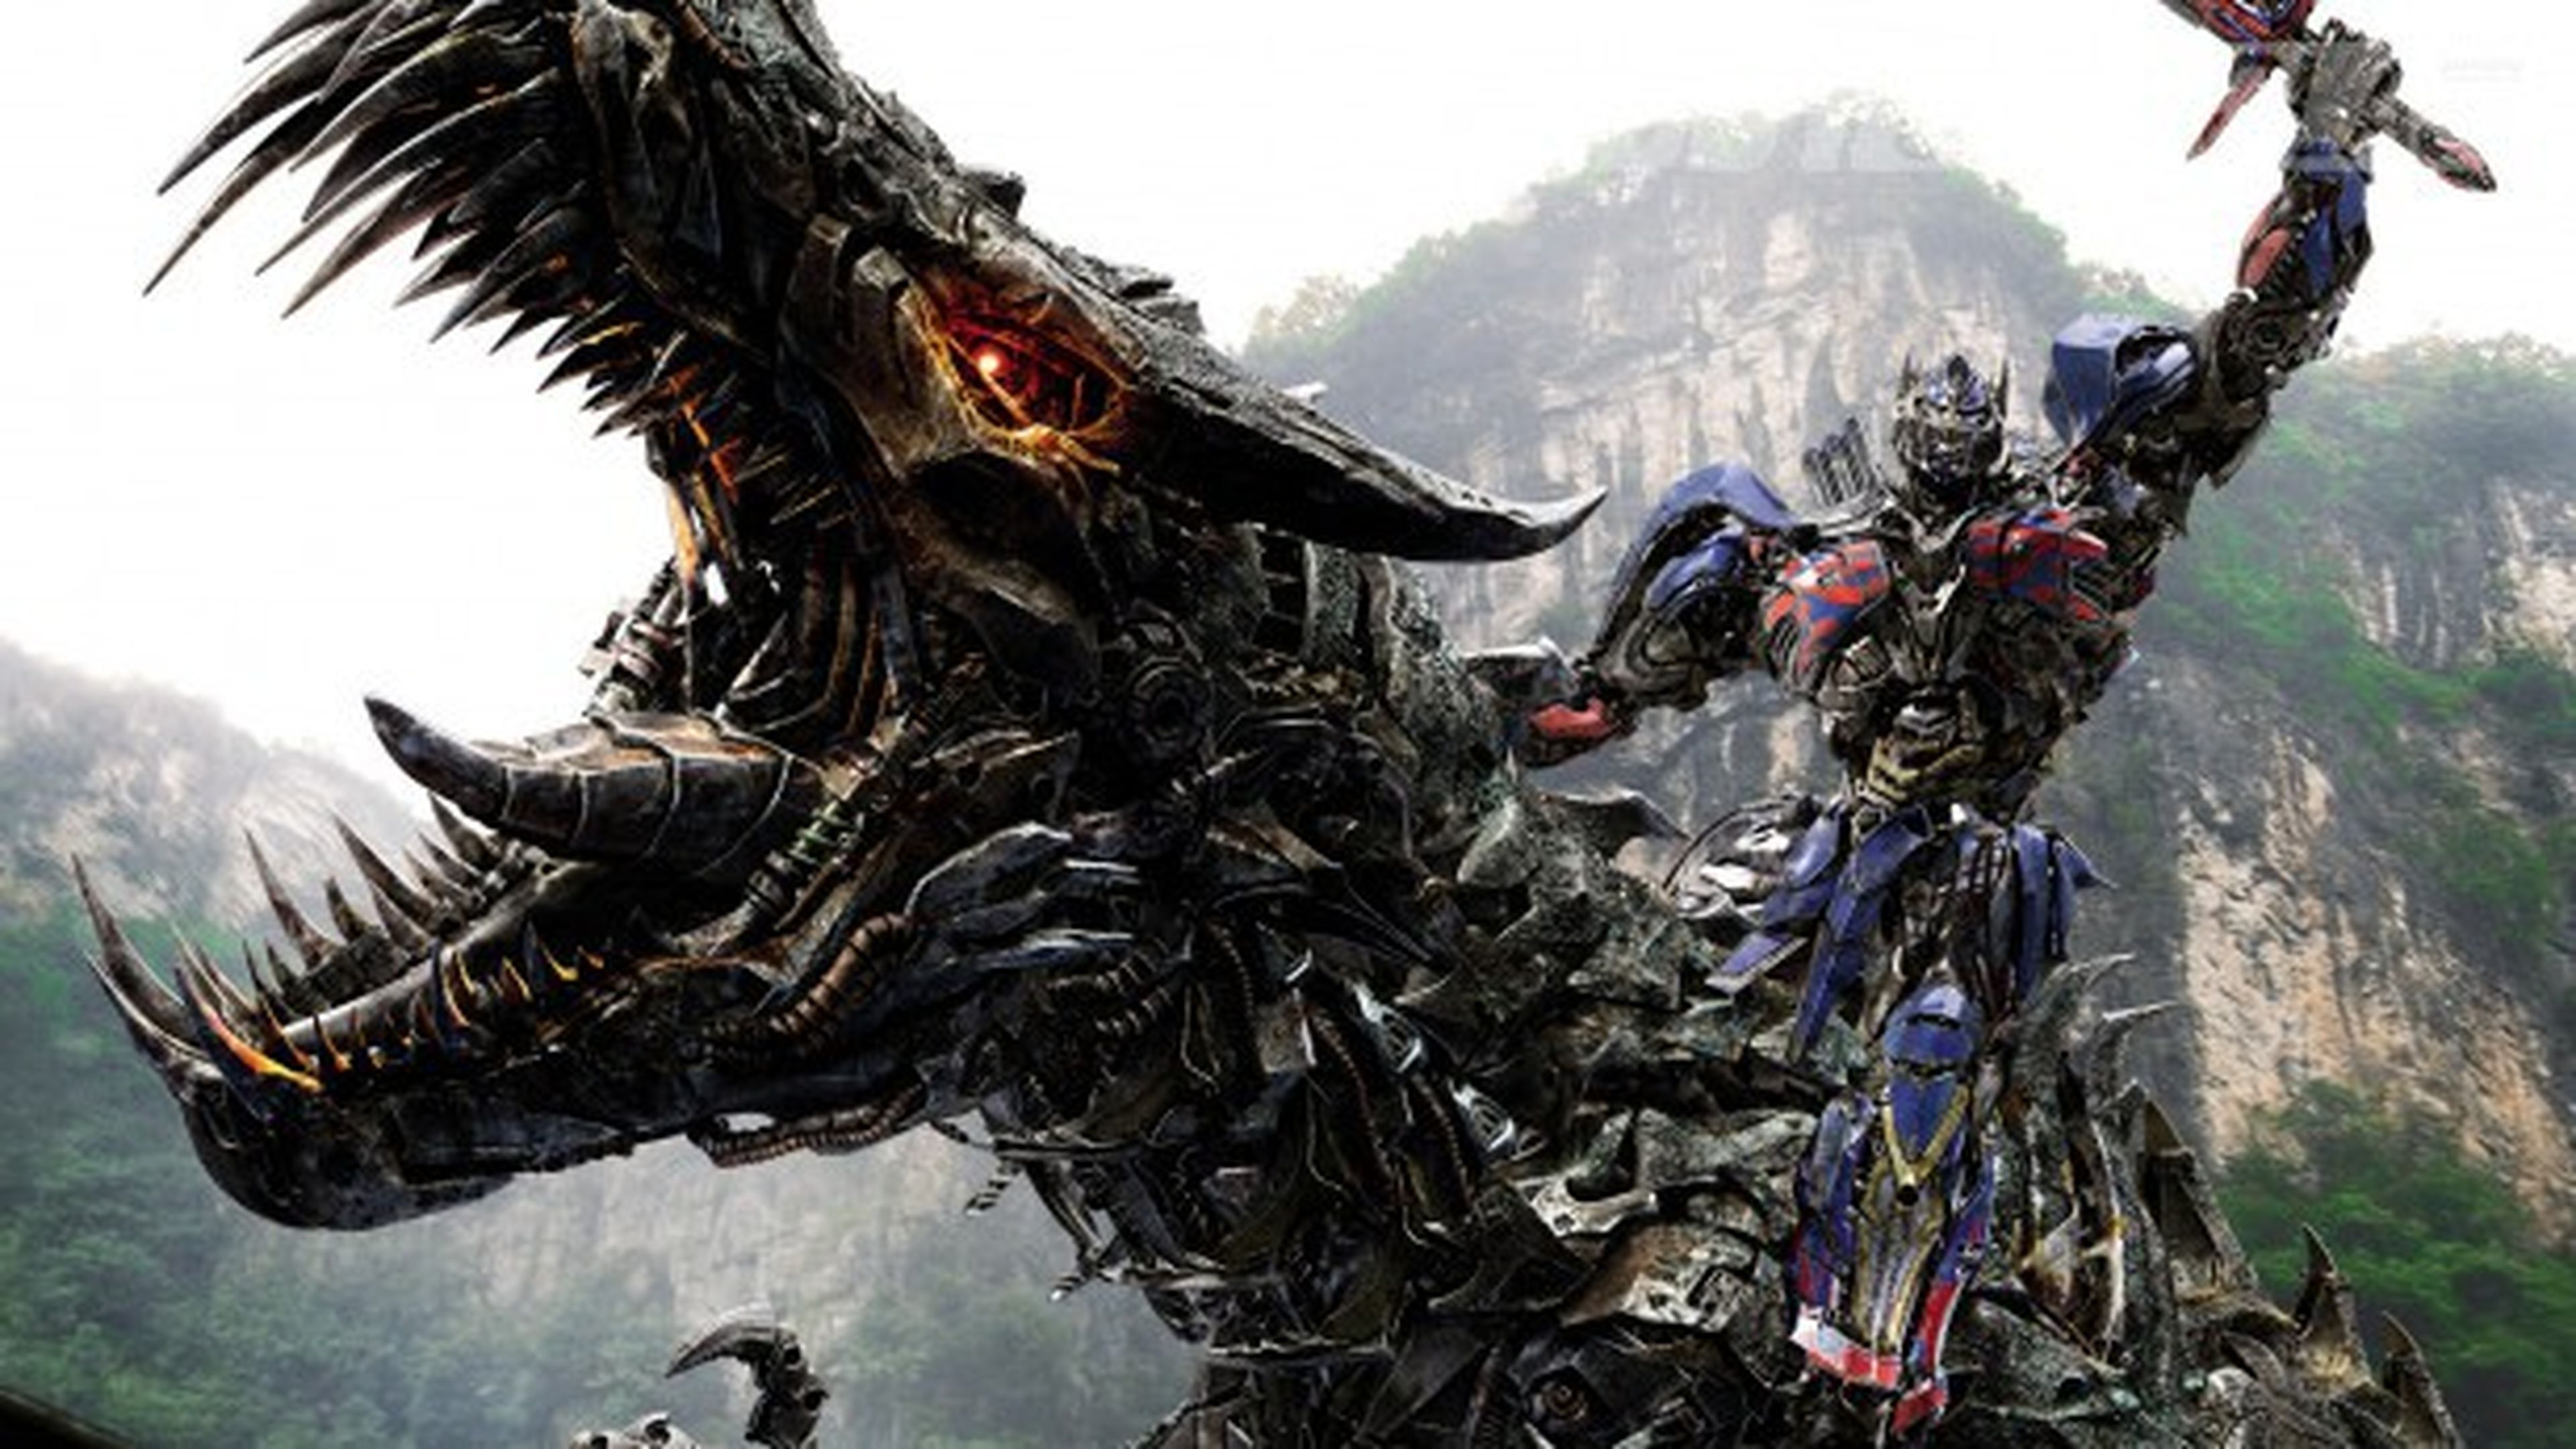 Transformers: La era de la extinción en Blu-Ray con contenido exclusivo en GAME